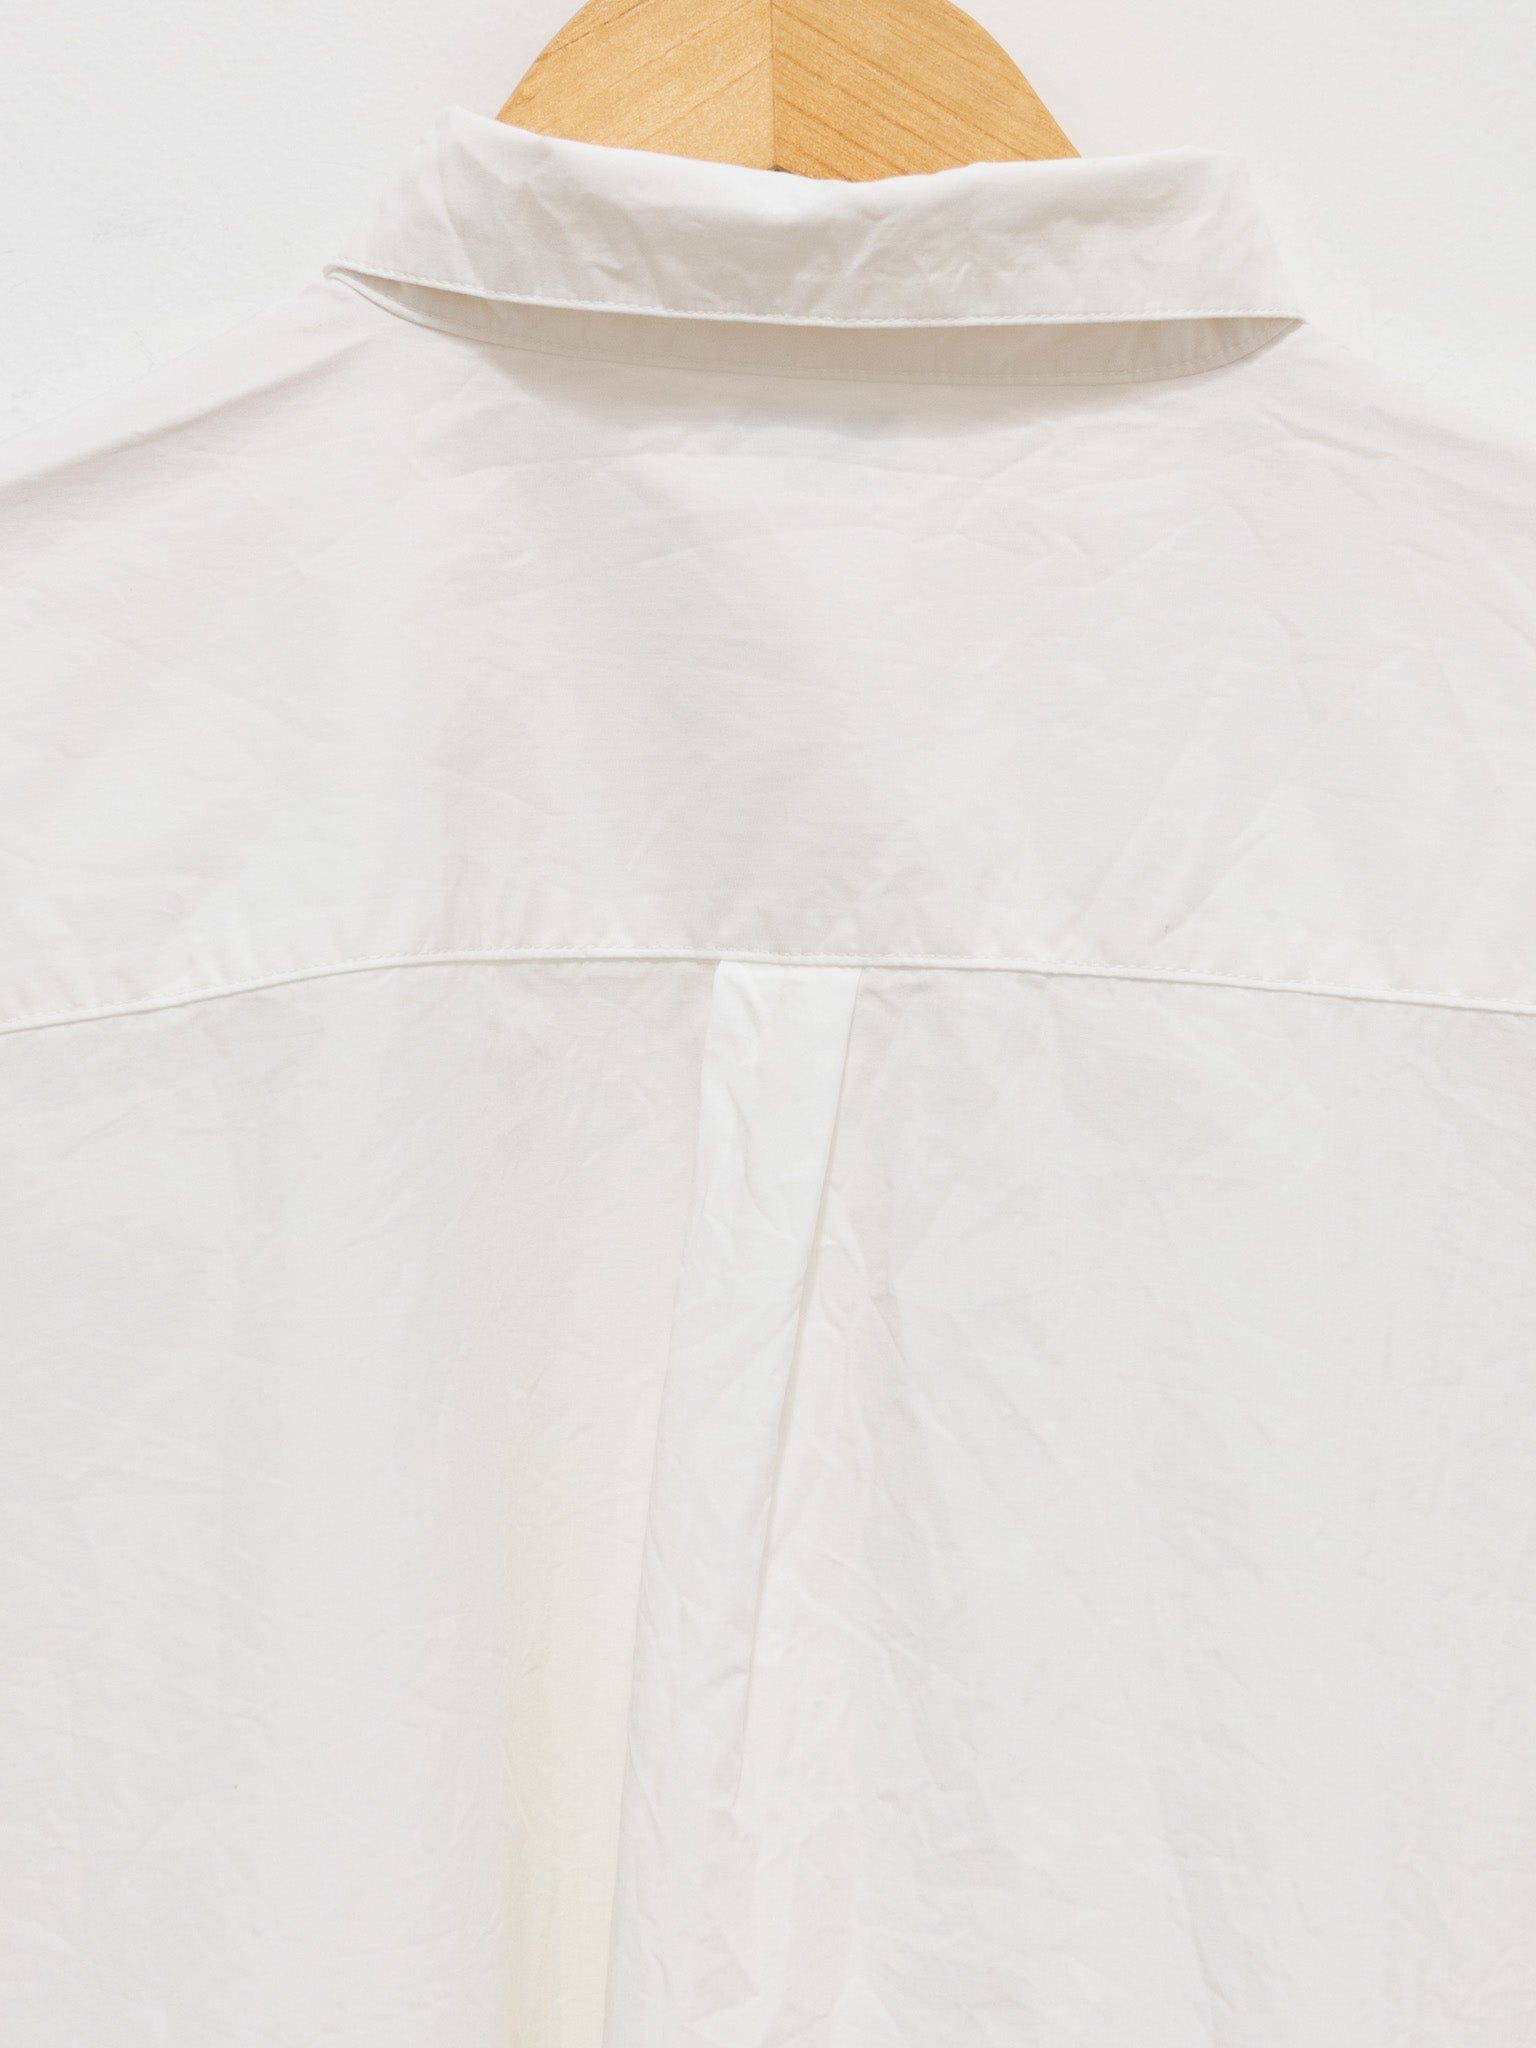 Namu Shop - ICHI Washer BD Shirt - White